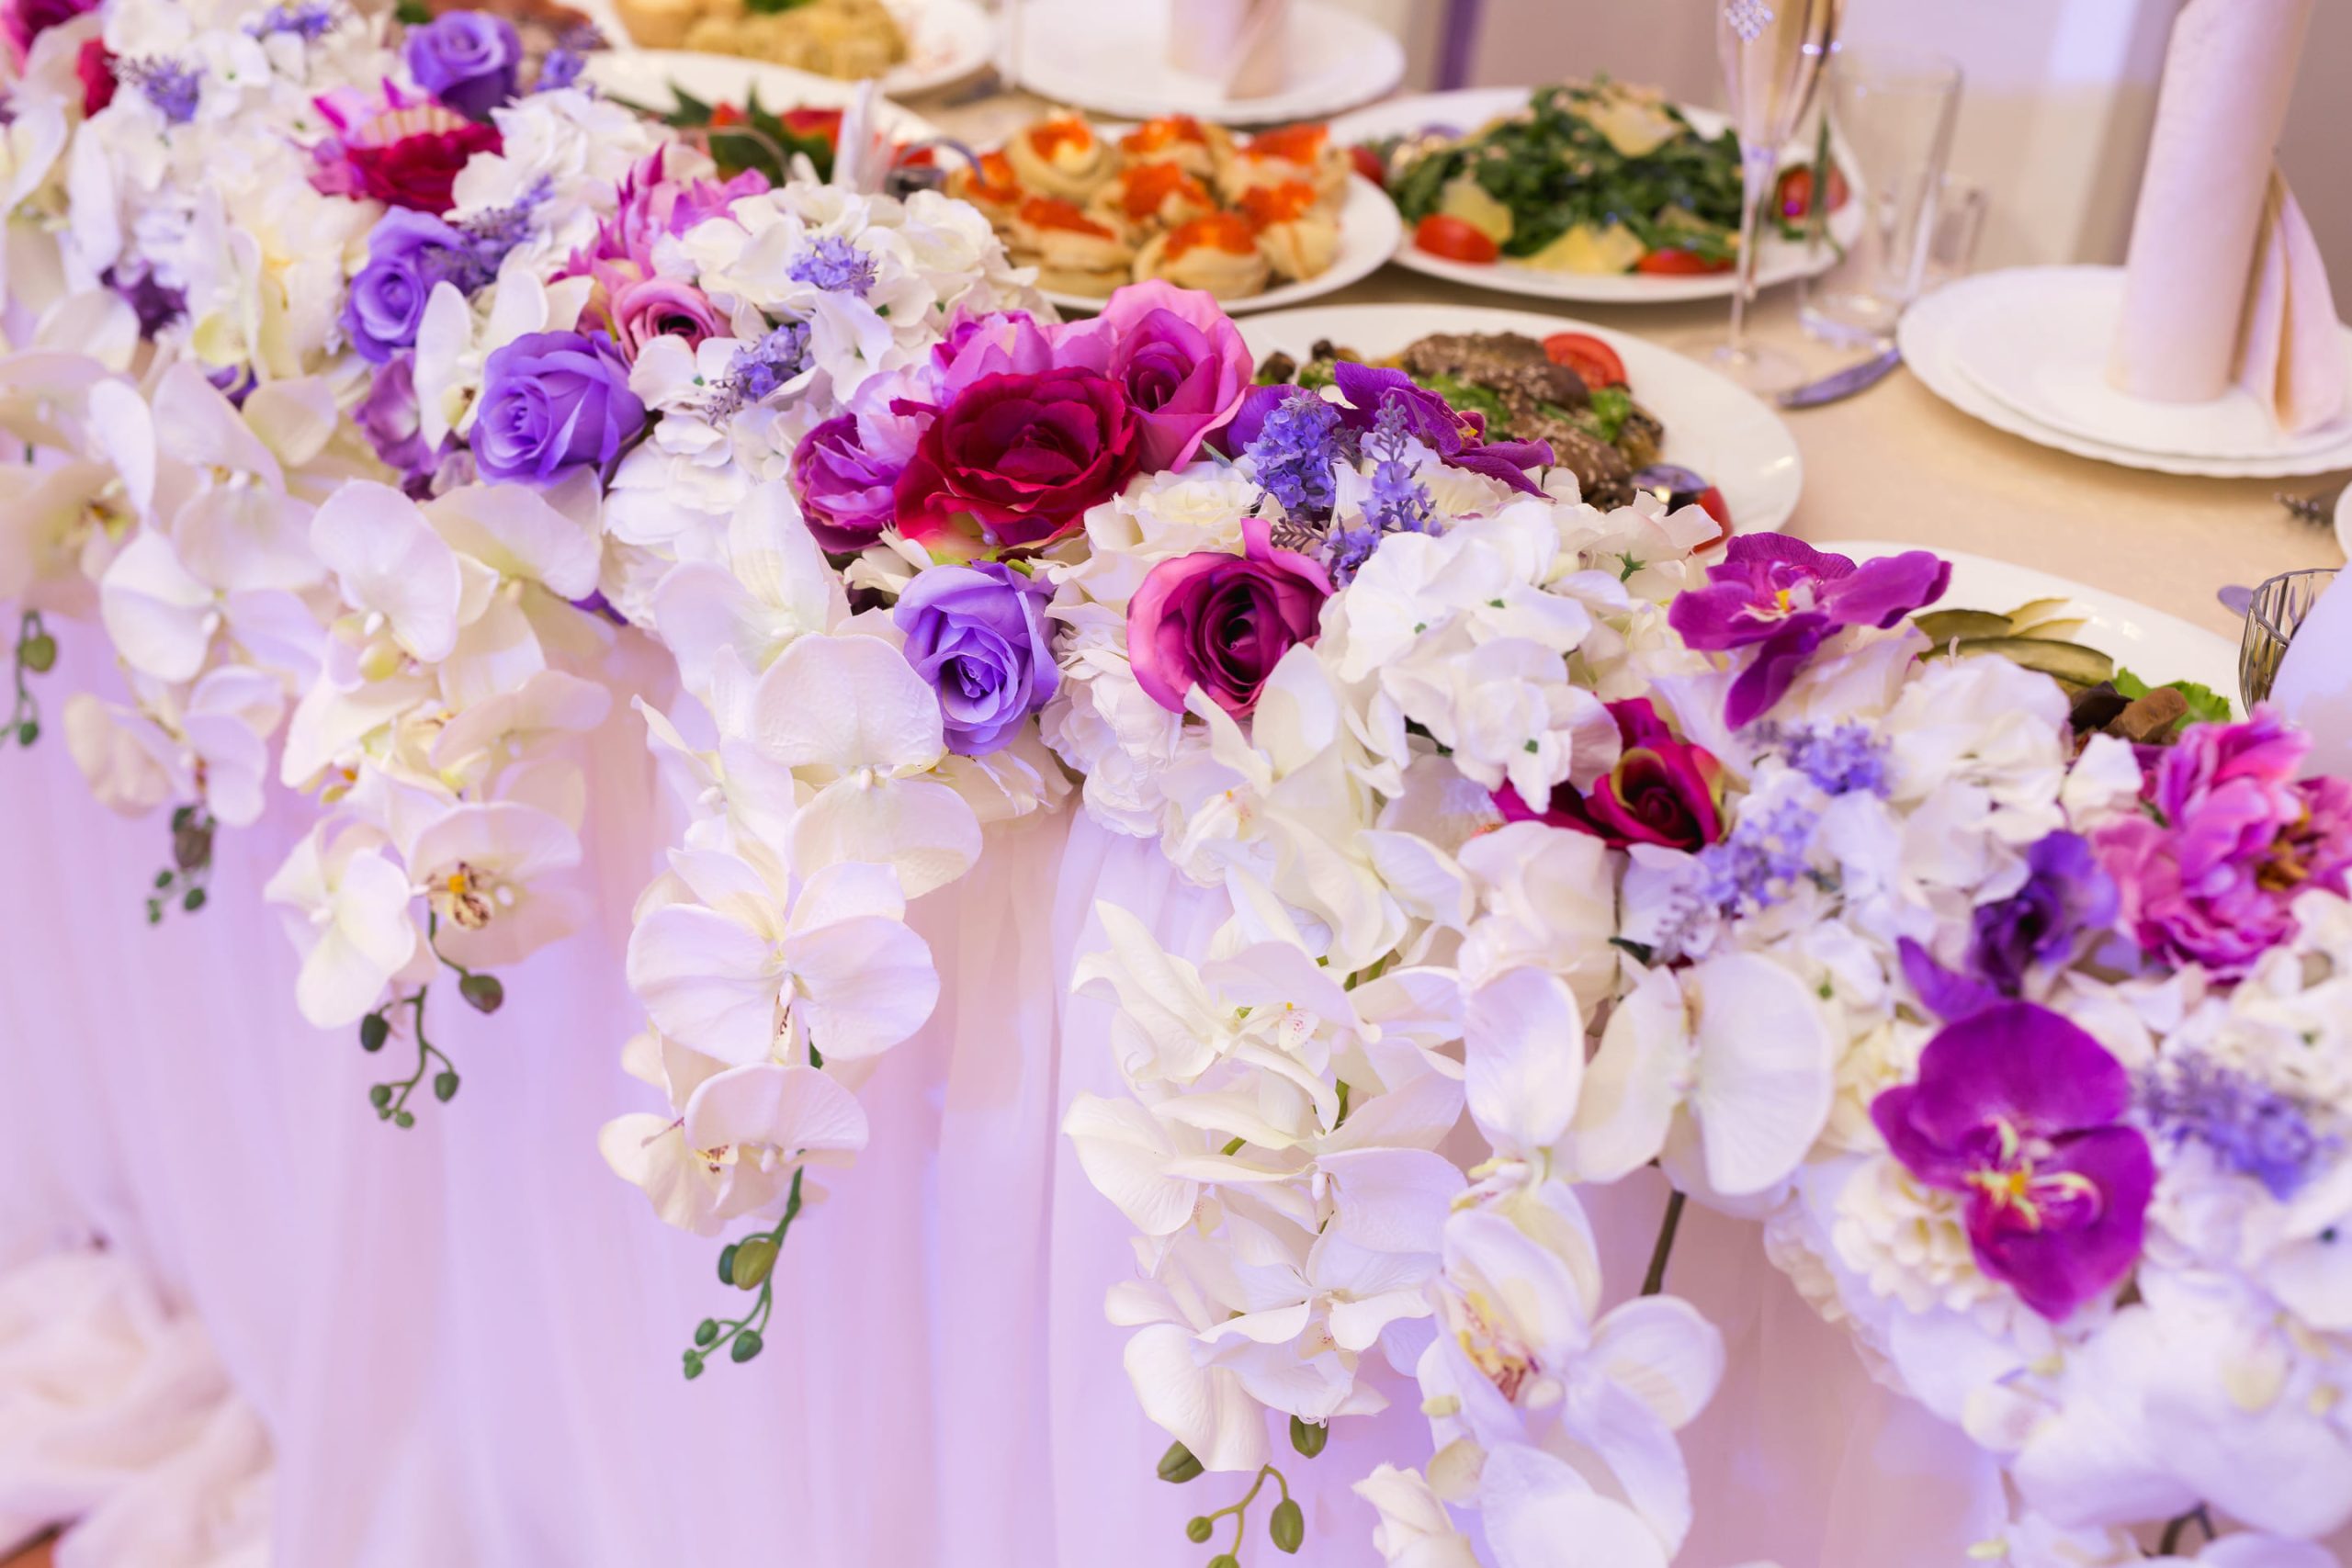 Decoración floral vibrante adornando el borde de una mesa de banquete.